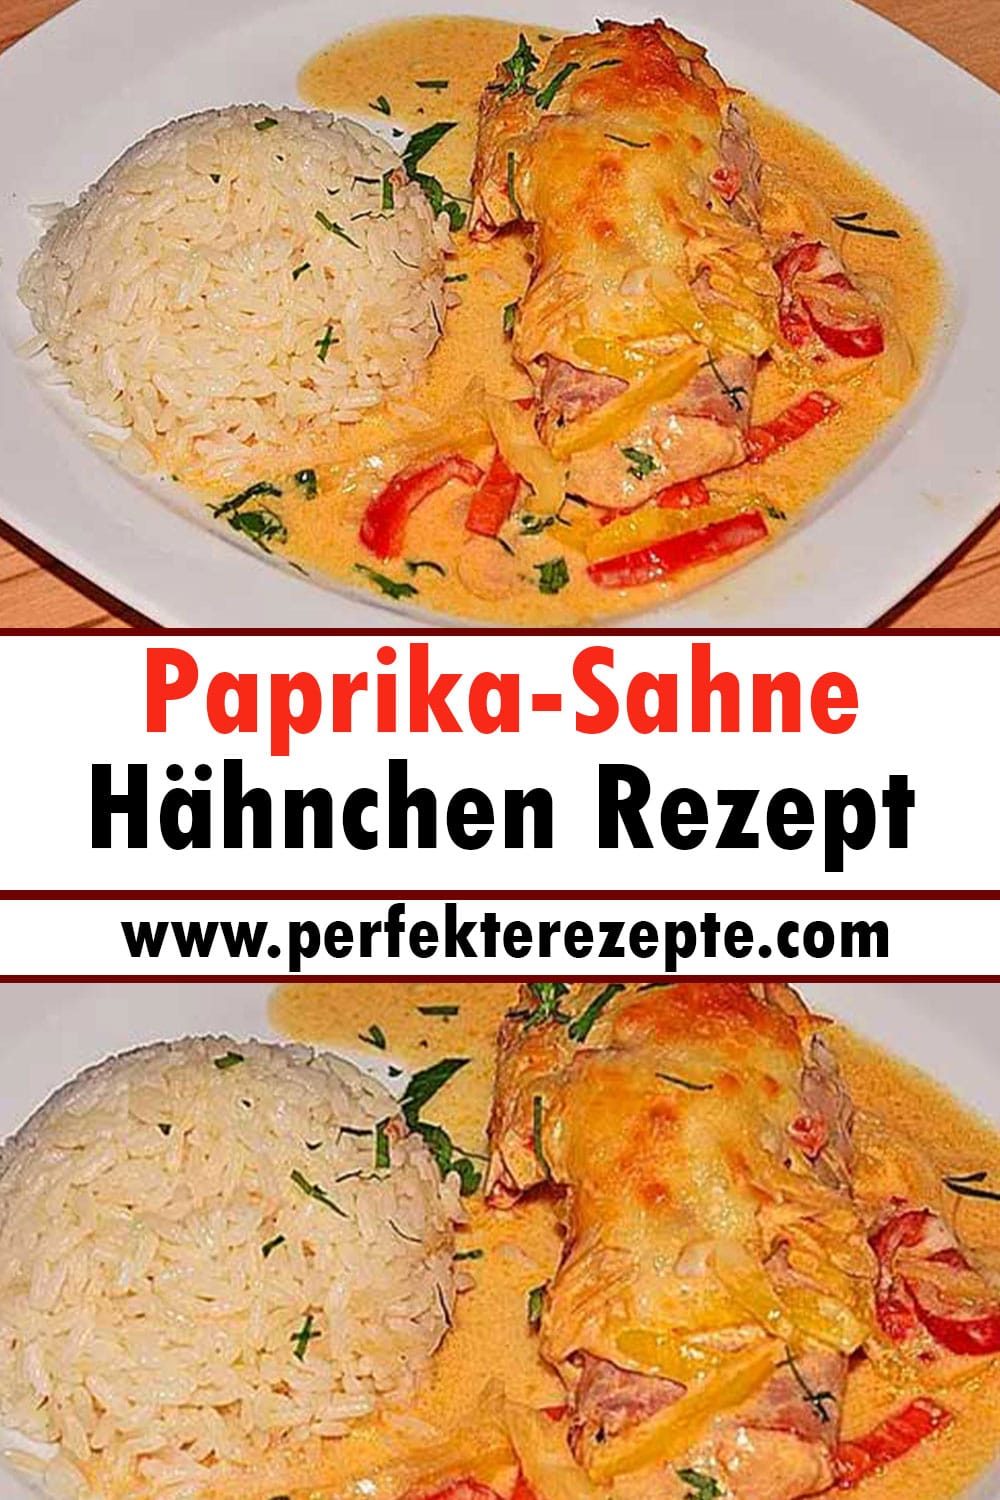 Paprika-Sahne-Hähnchen Rezept